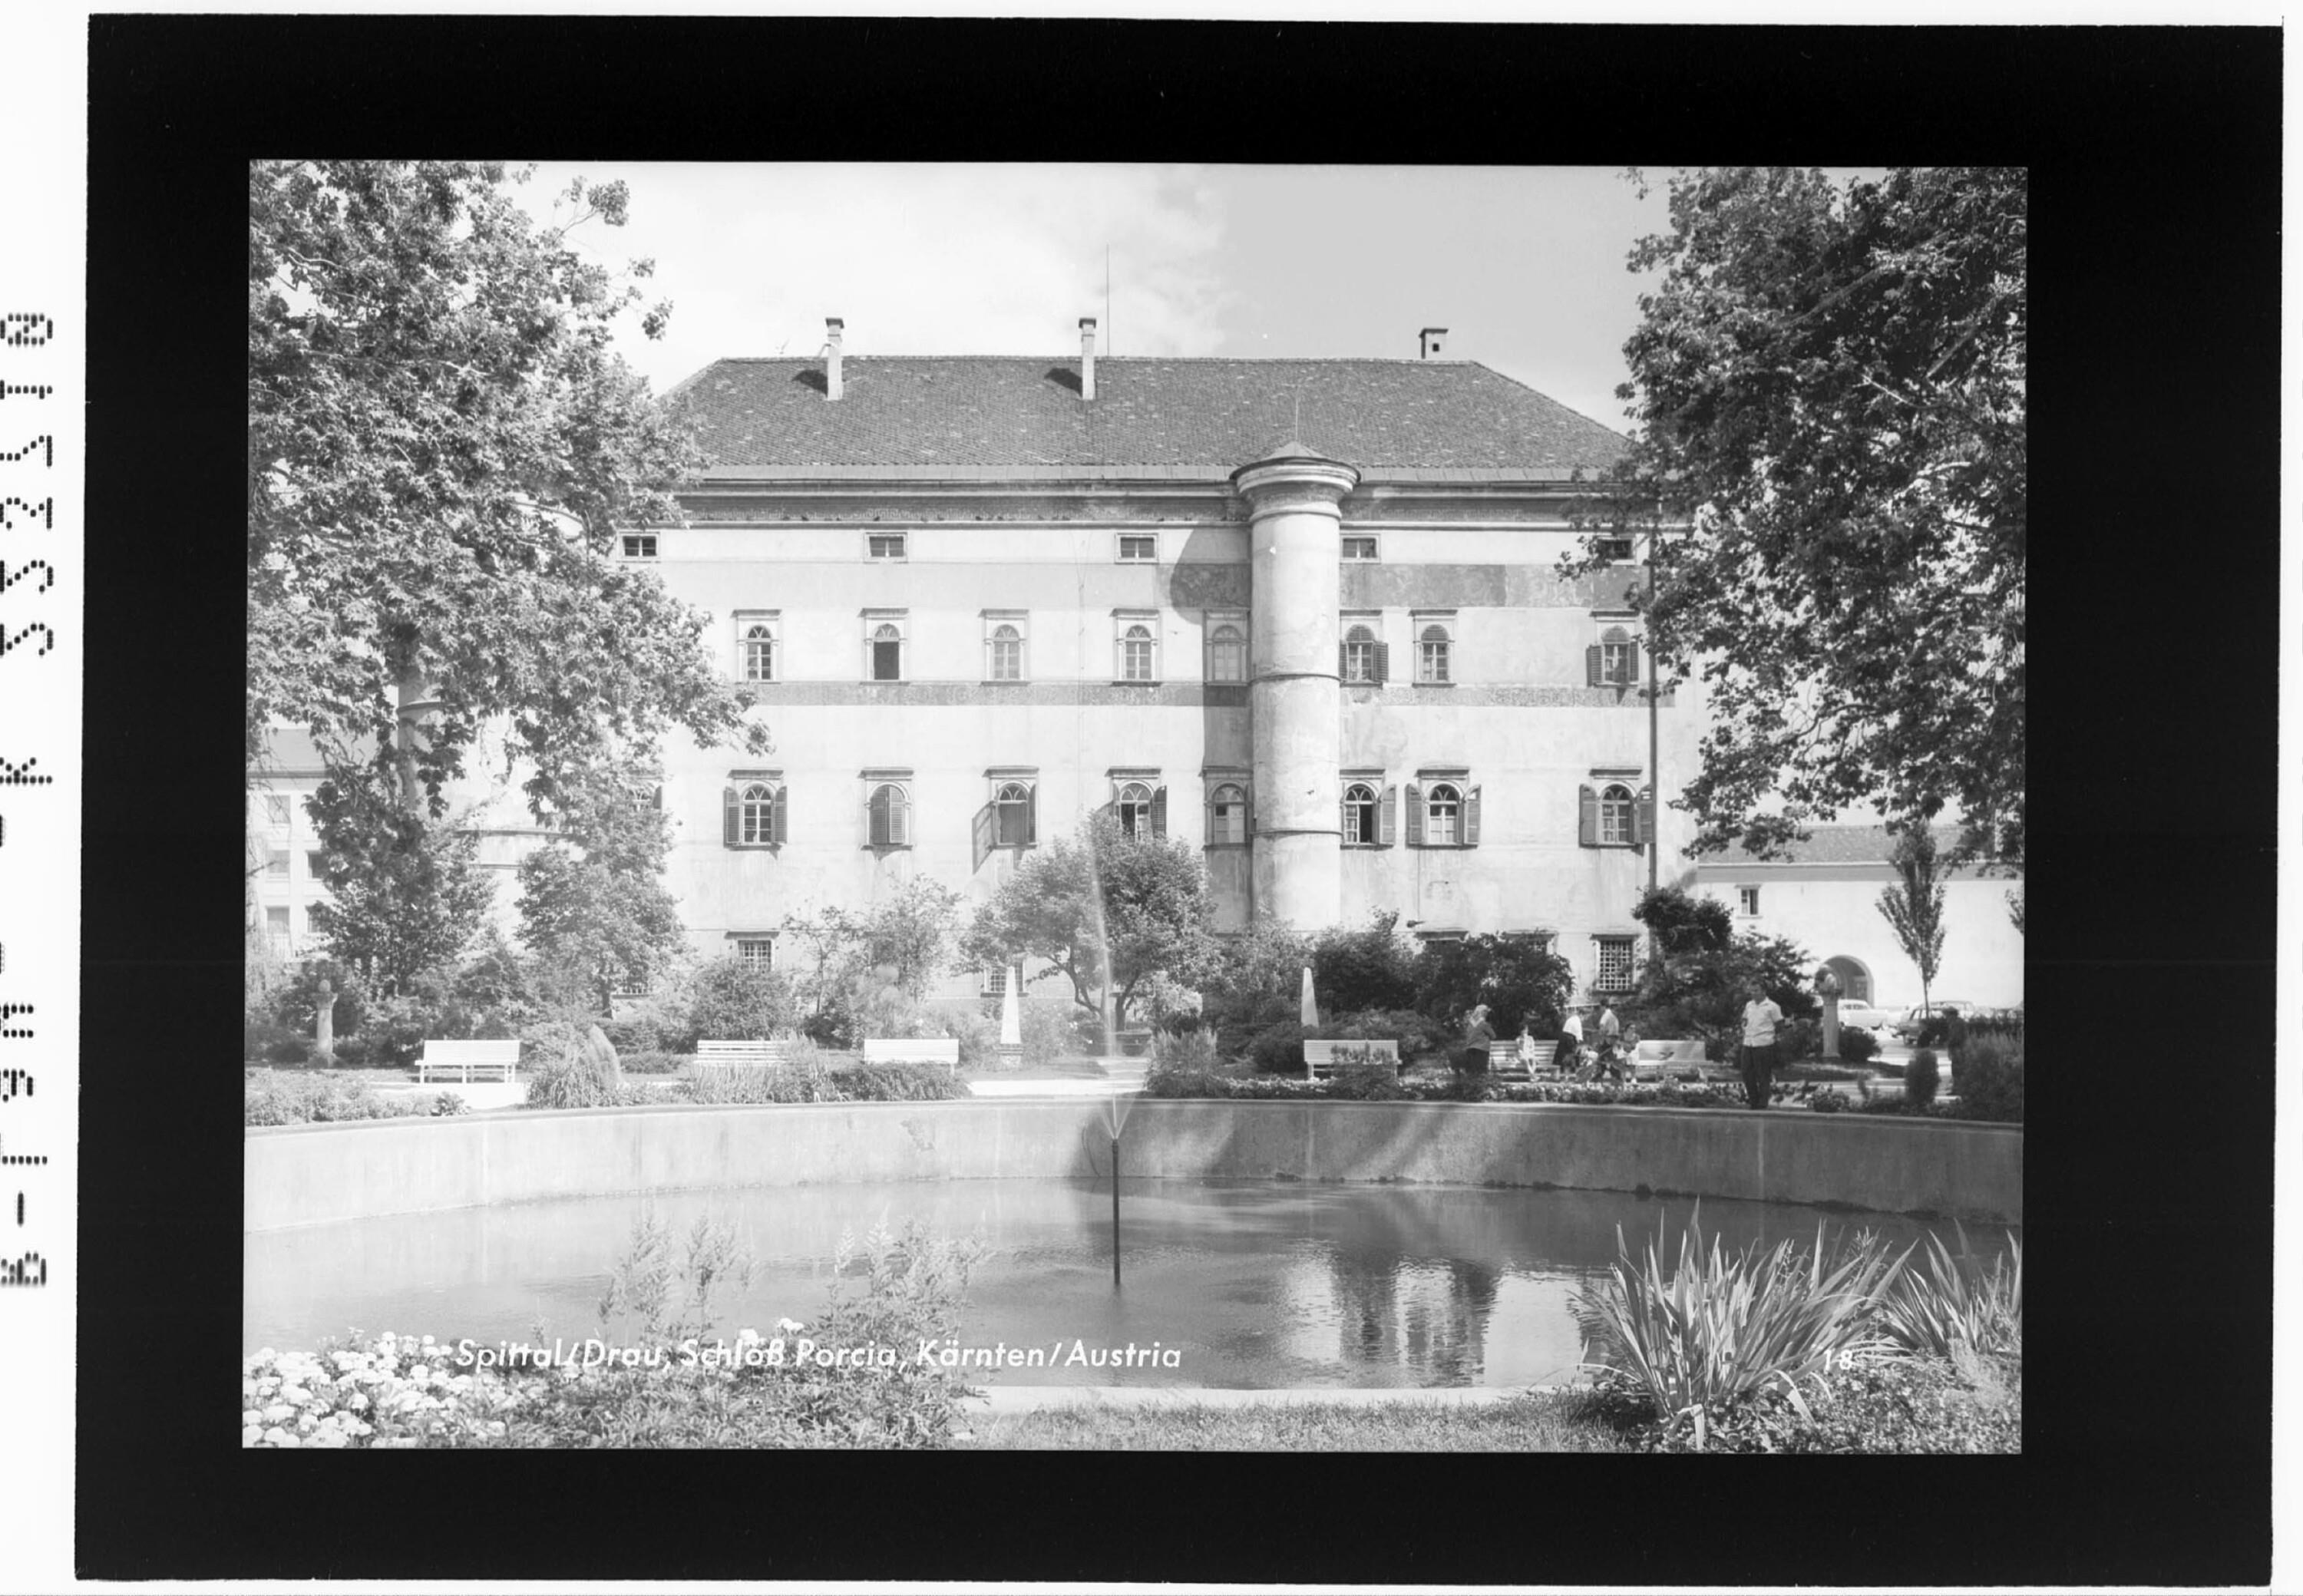 Spittal an der Drau / Schloss Porcia / Kärnten / Austria></div>


    <hr>
    <div class=